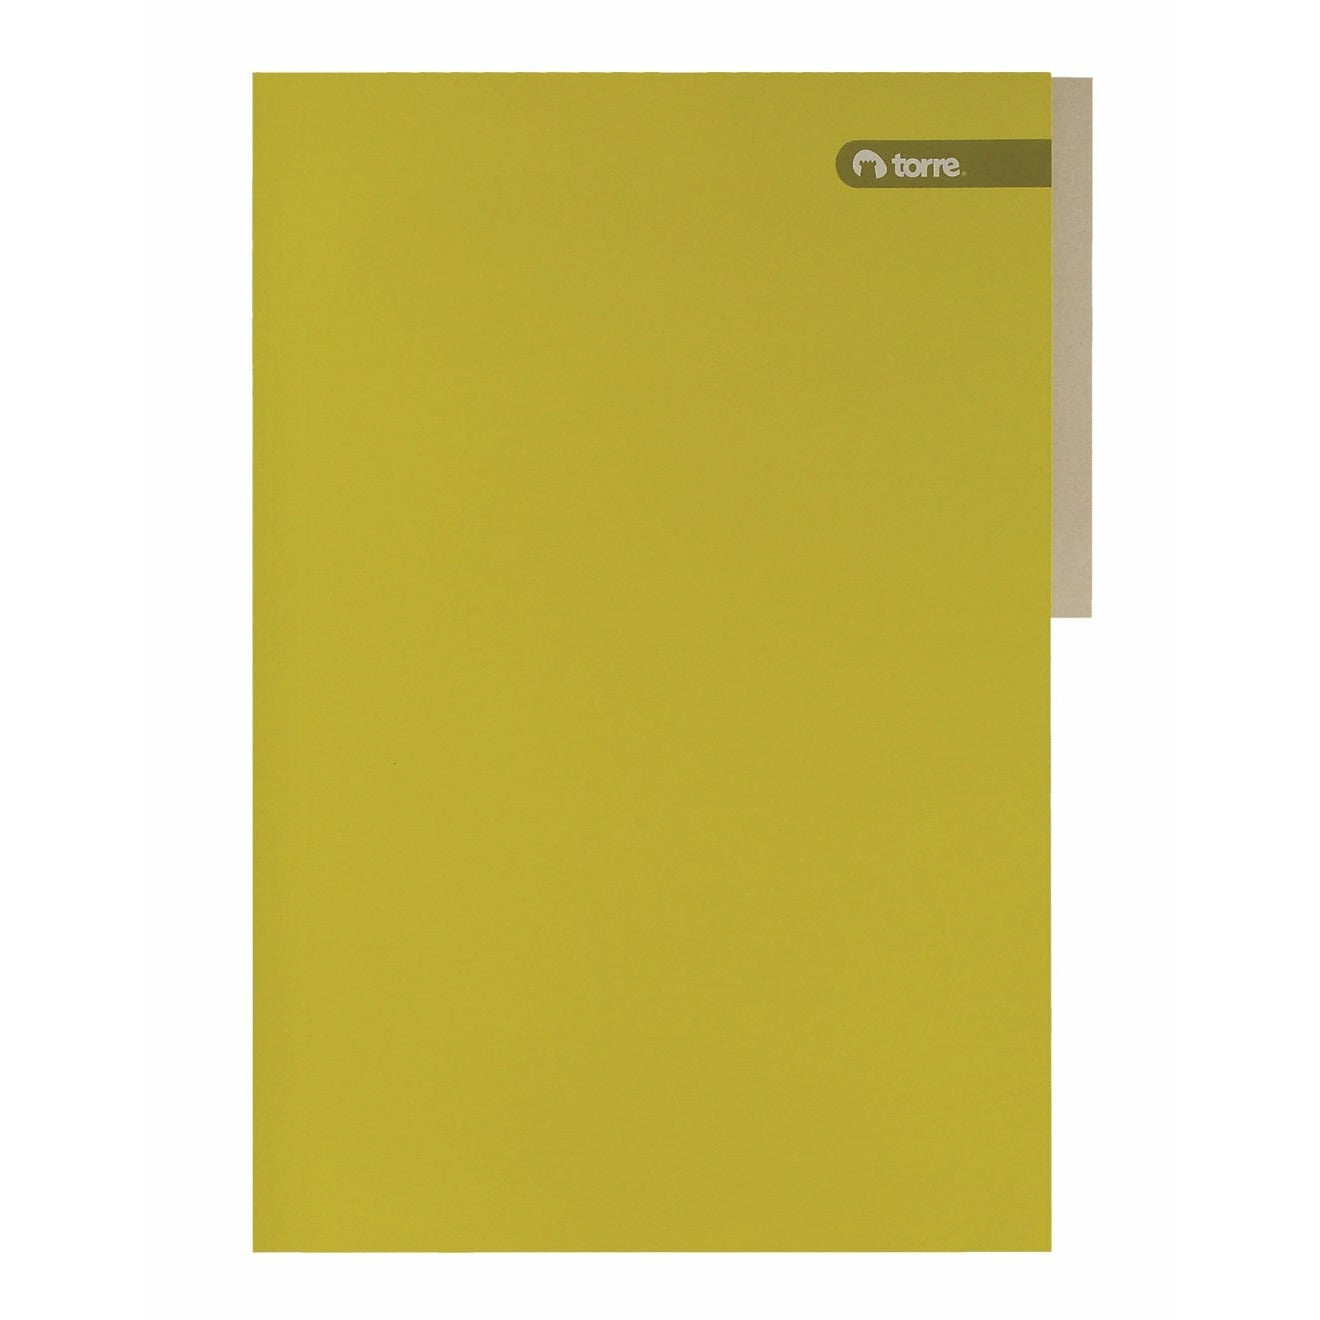 Carpeta pigmentada torre amarilla